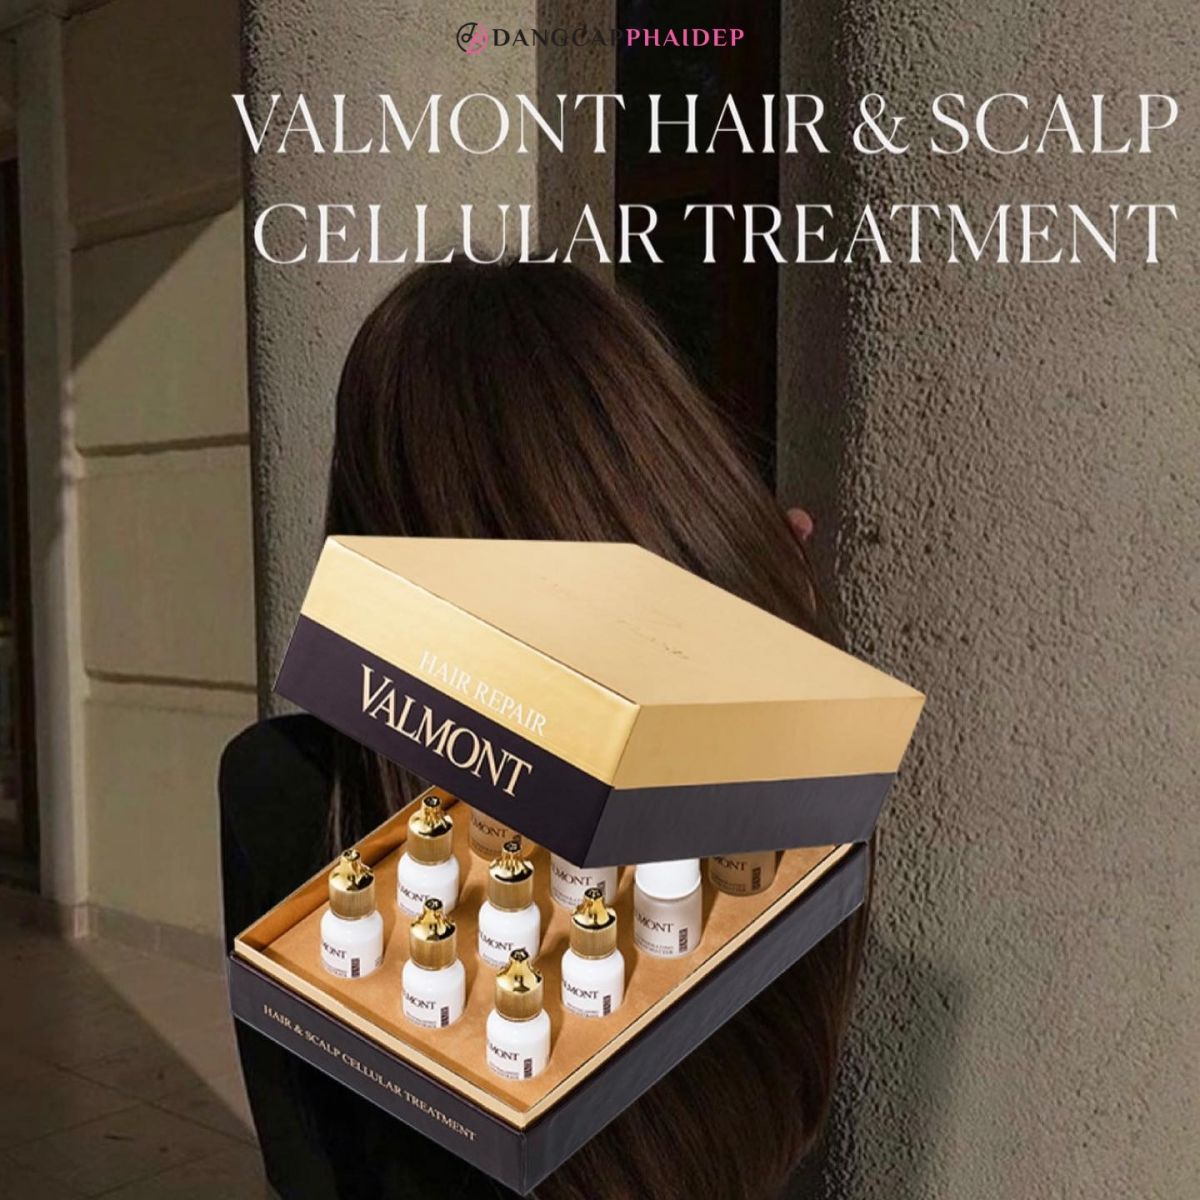 Valmont Hair & Scalp Cellular Treatment thích hợp với mọi đối tượng.